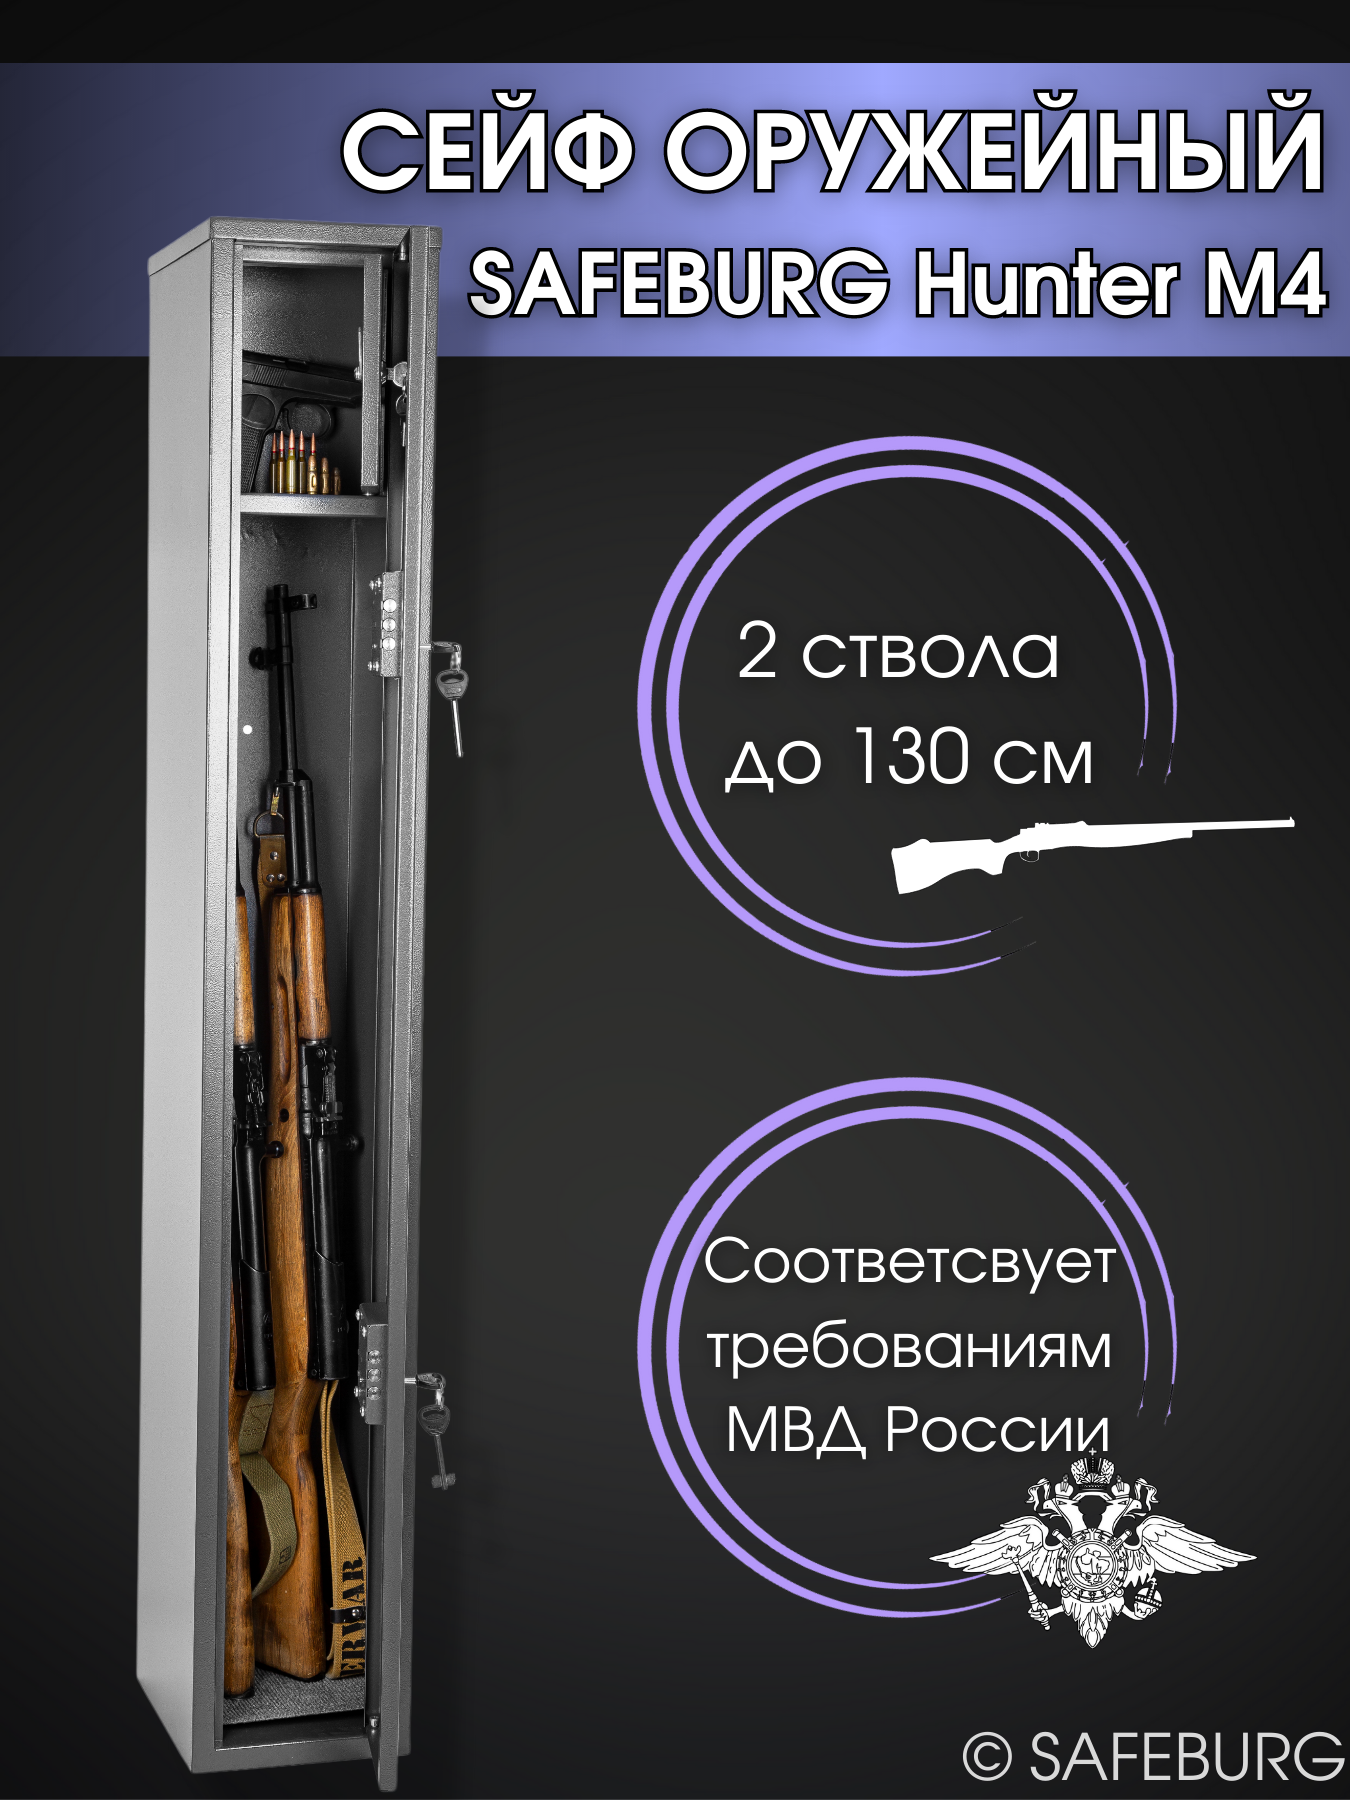 Сейф оружейный SAFEBURG Hunter M4